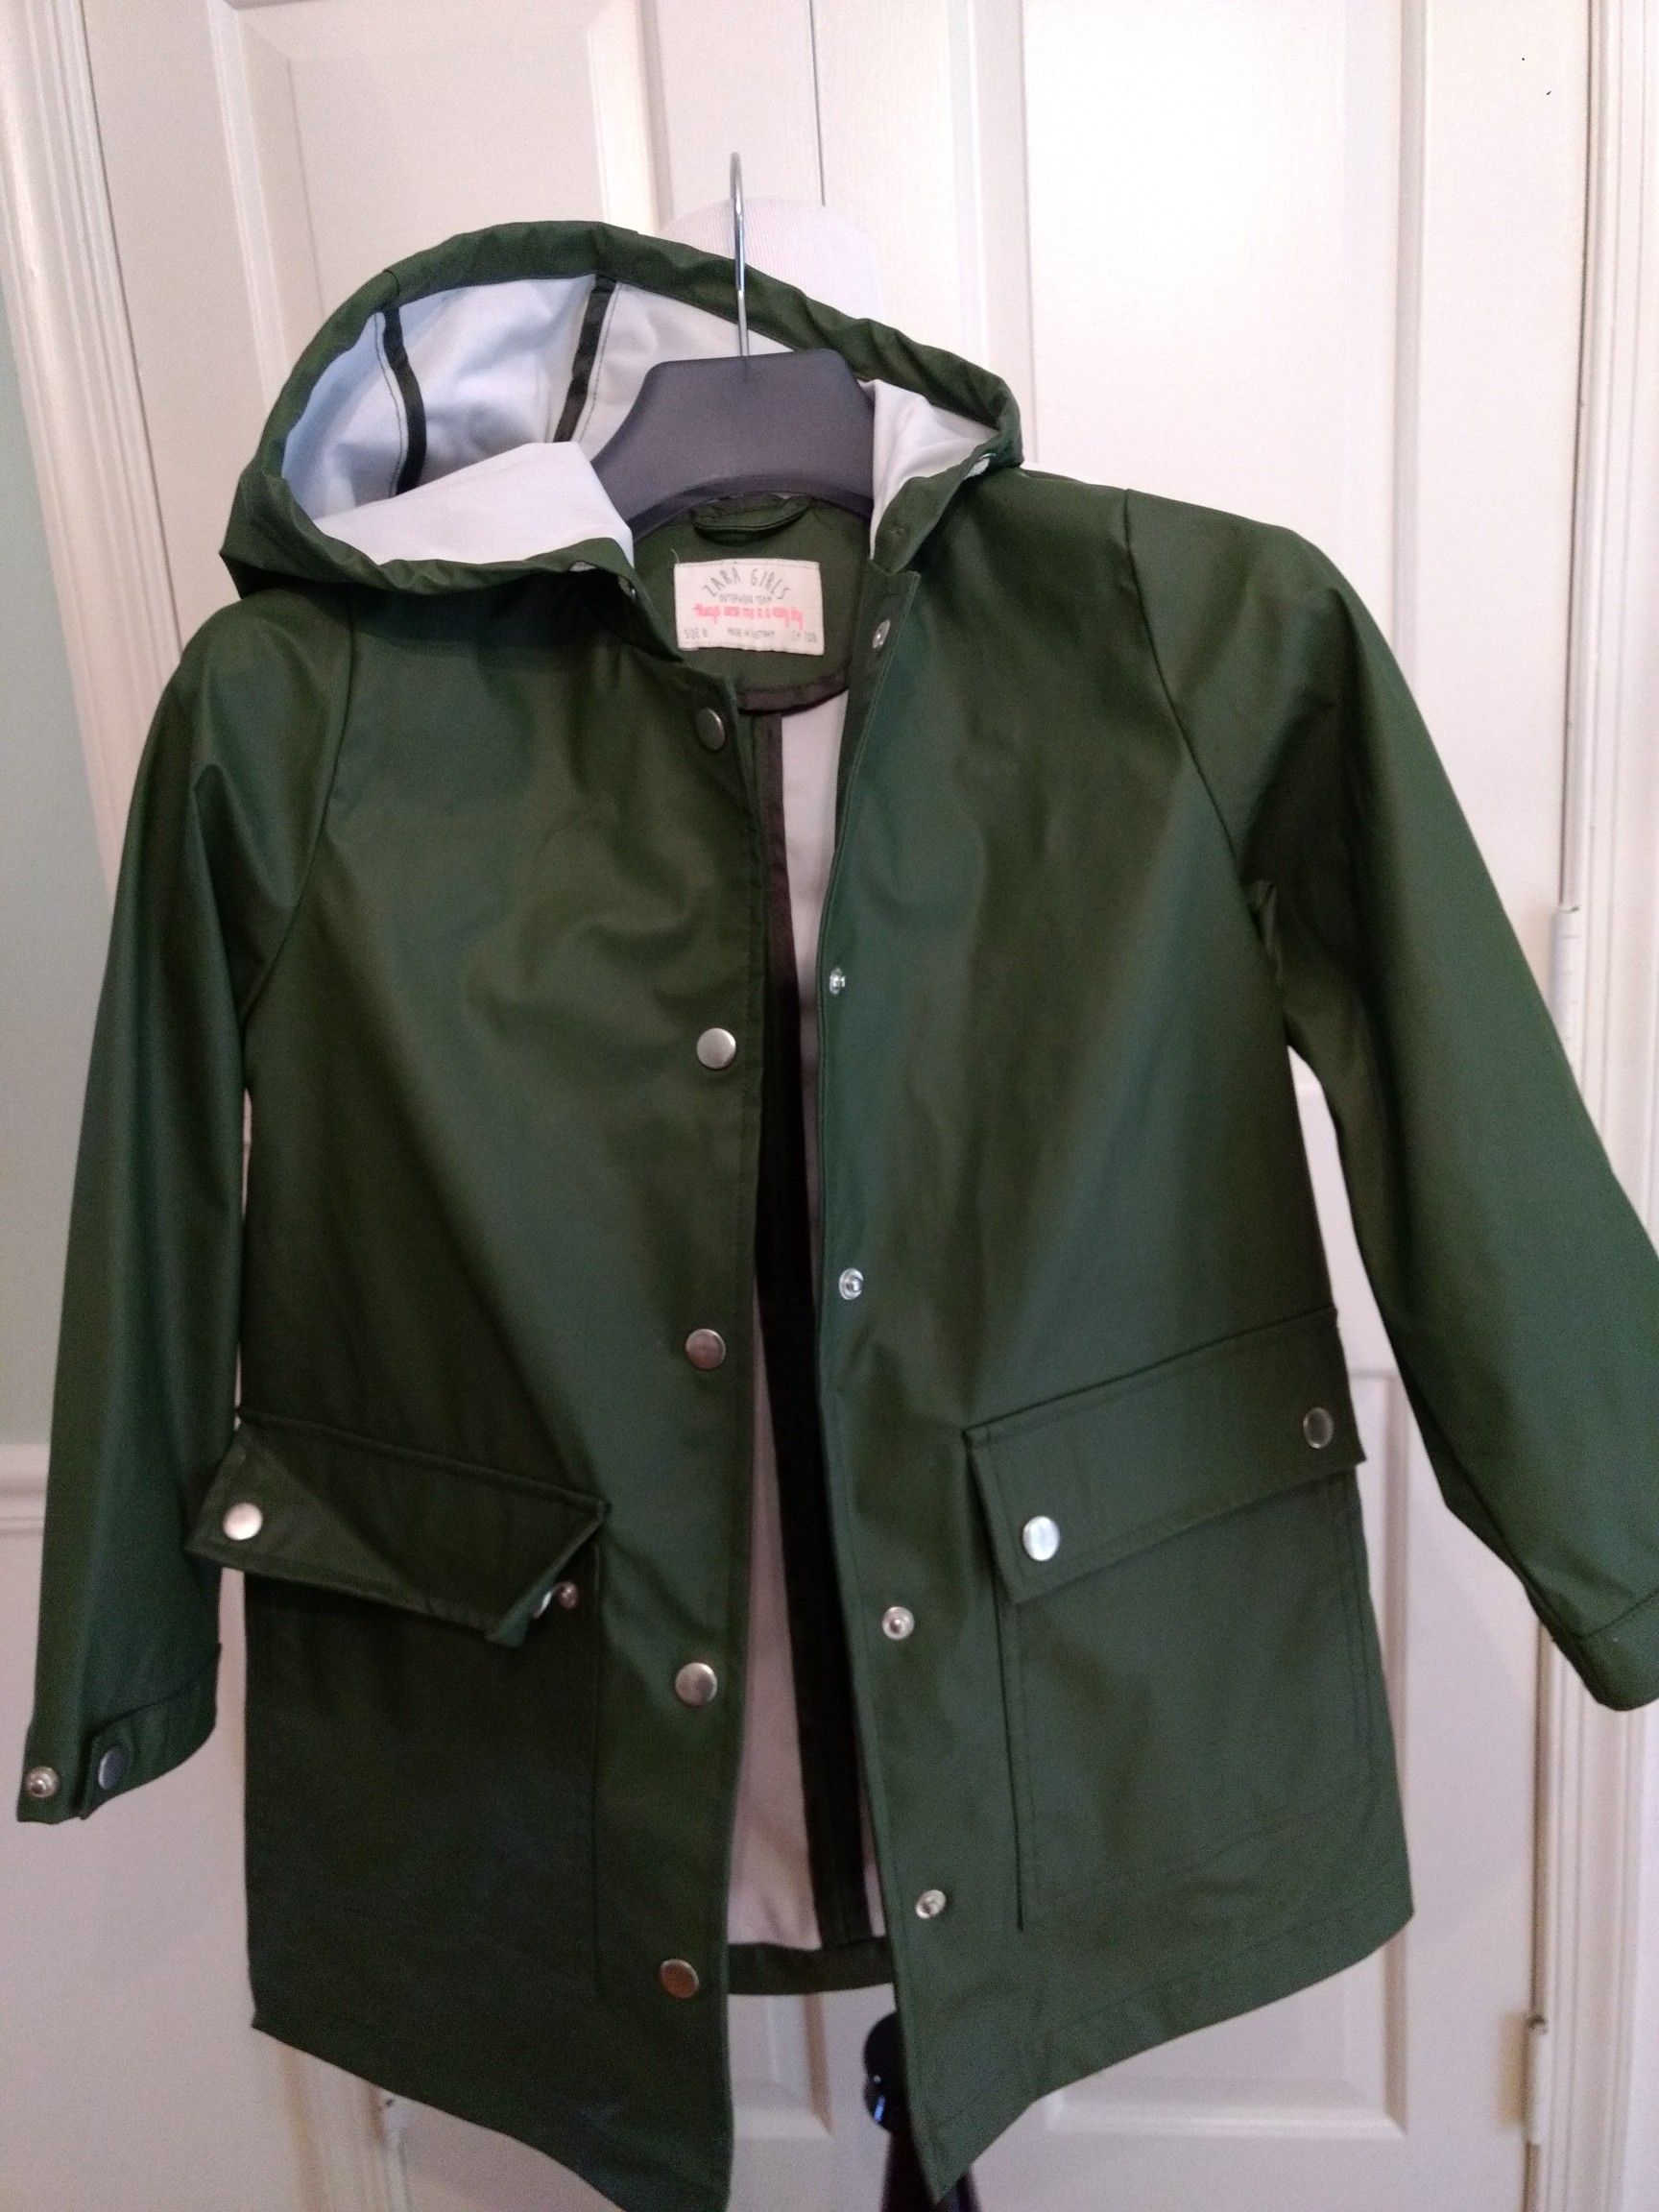 Raincoat, size 8 (128cm), by "Zara Girls".